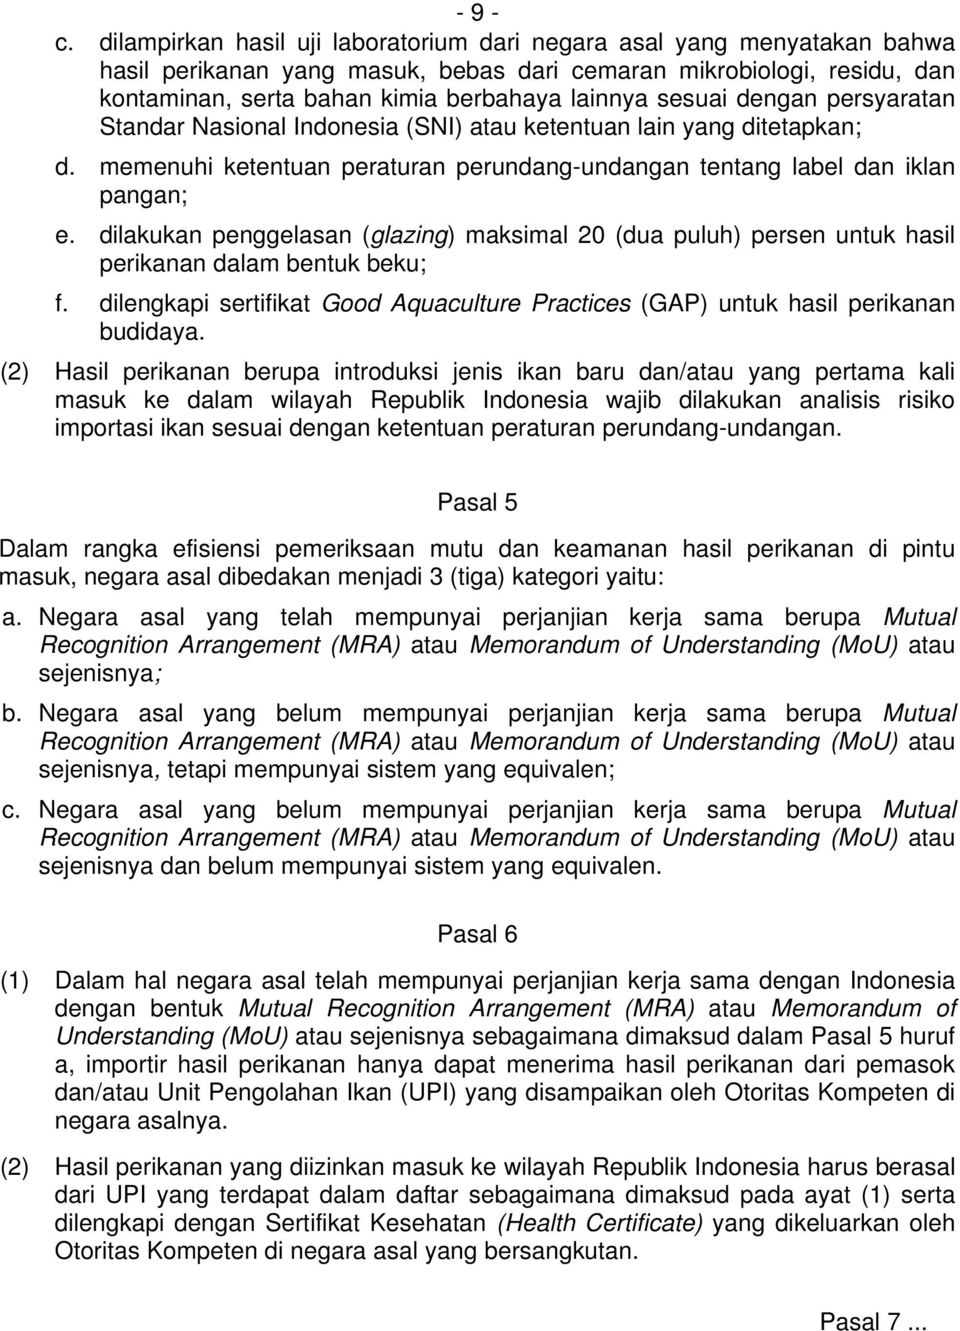 sesuai dengan persyaratan Standar Nasional Indonesia (SNI) atau ketentuan lain yang ditetapkan; d. memenuhi ketentuan peraturan perundang-undangan tentang label dan iklan pangan; e.